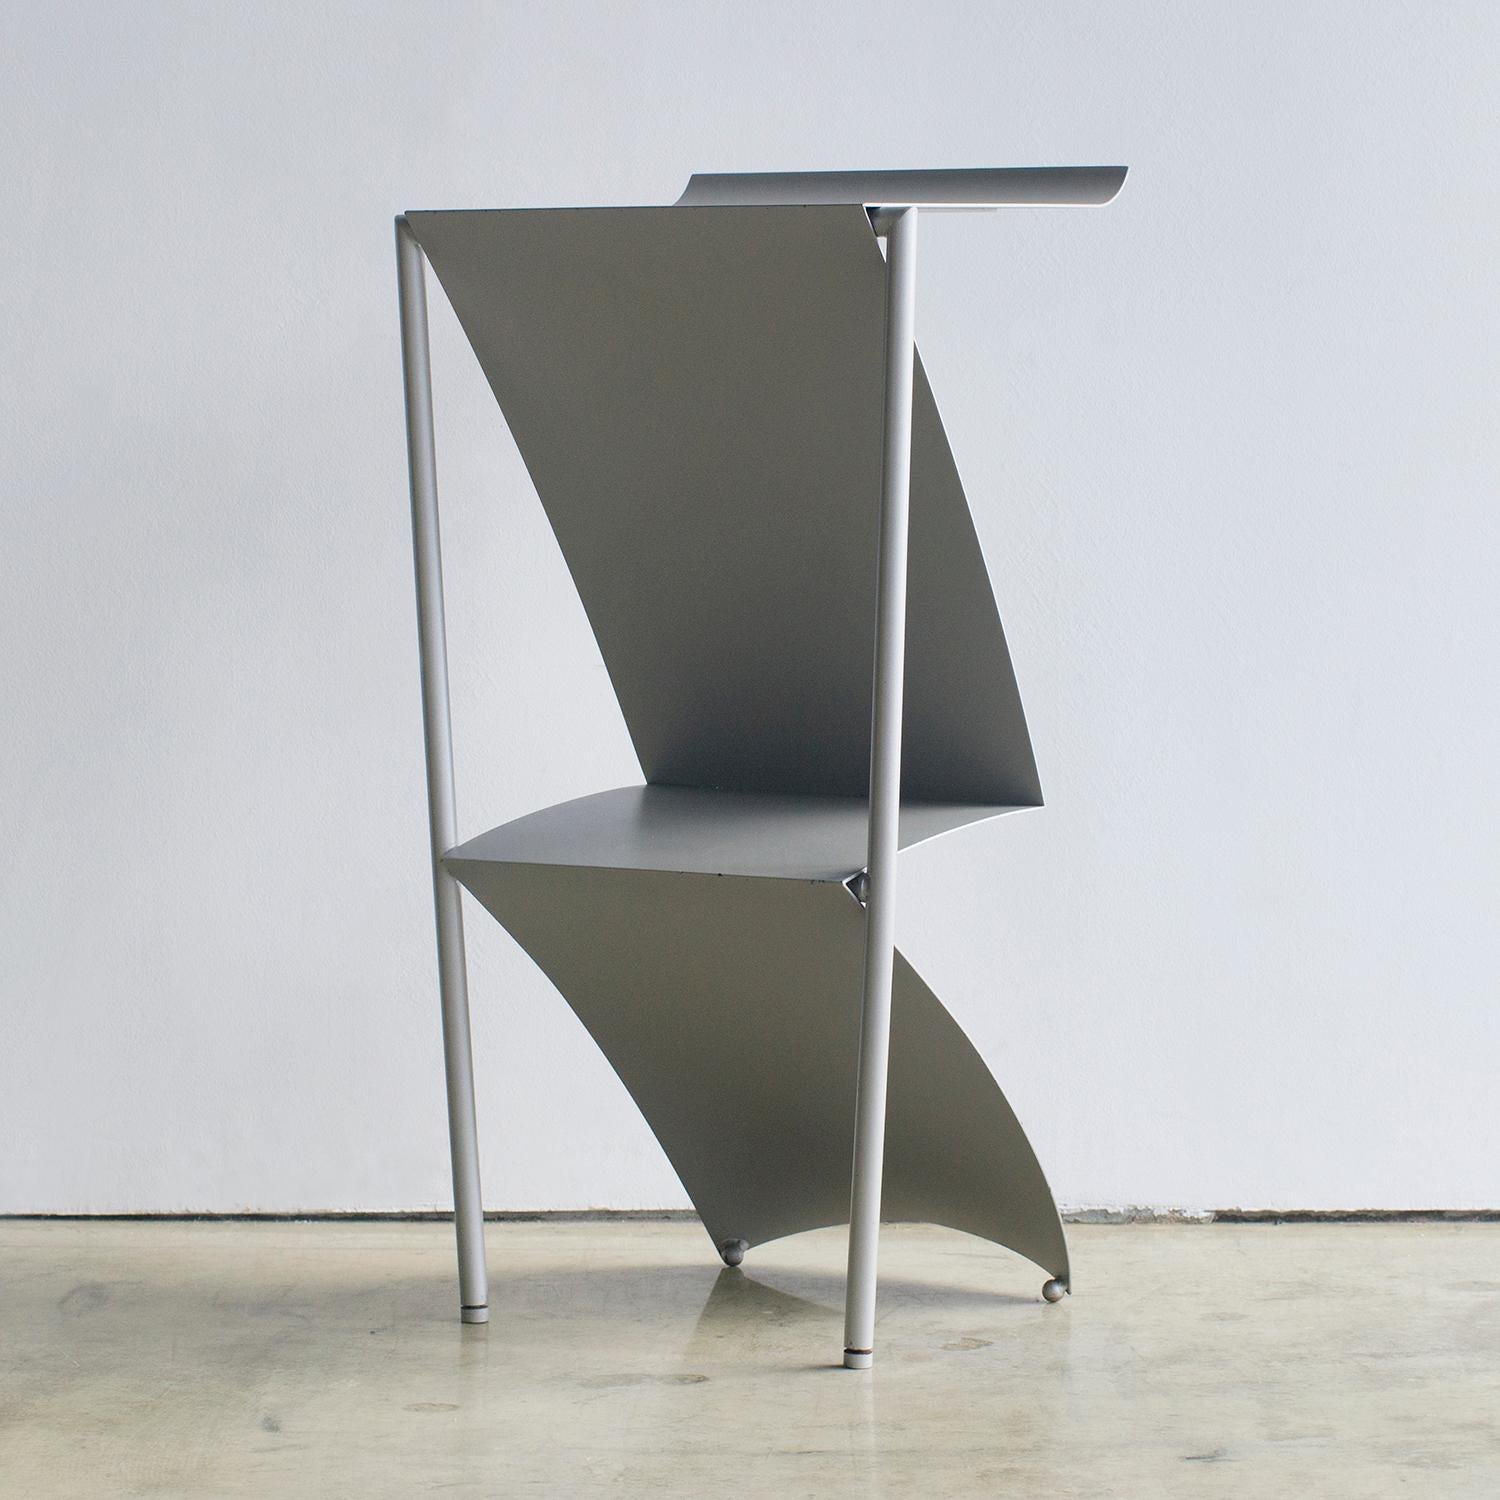 S'il vous plaît conçu par Marie Christine Doner pour IDEA, Japon. Il s'agit de l'un des produits de la collection Origami, publiée en 11 meubles en 1986. Tabouret de bar à l'origine, mais utilisable comme table d'appoint.